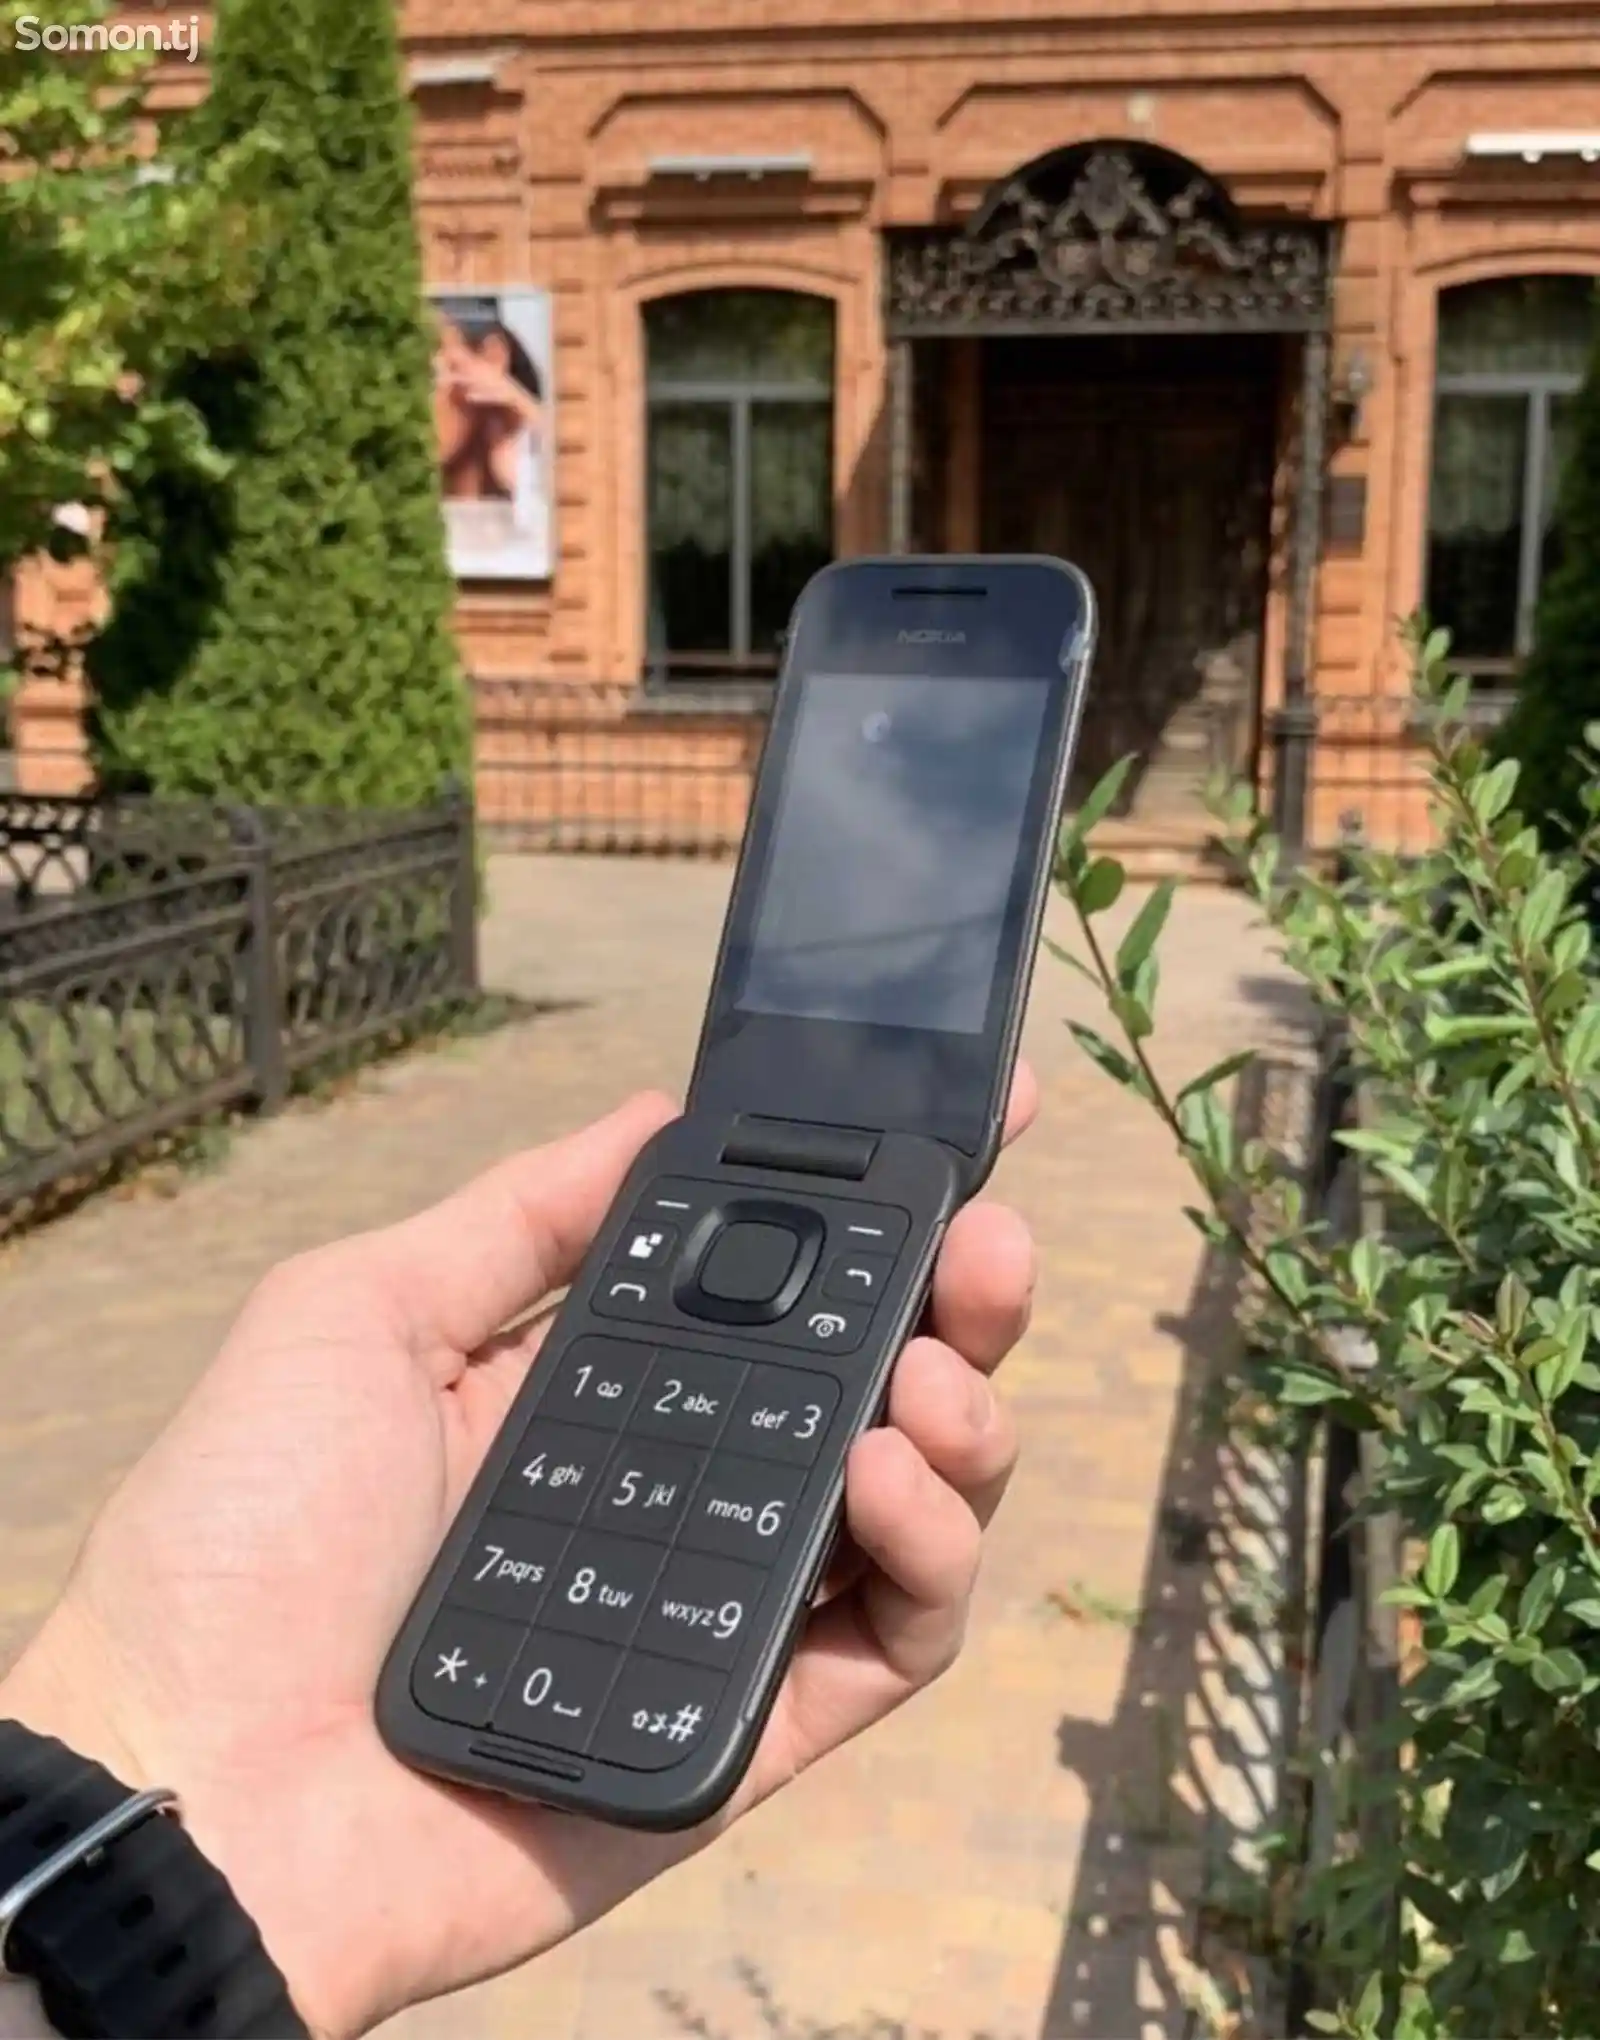 Nokia 2660-1